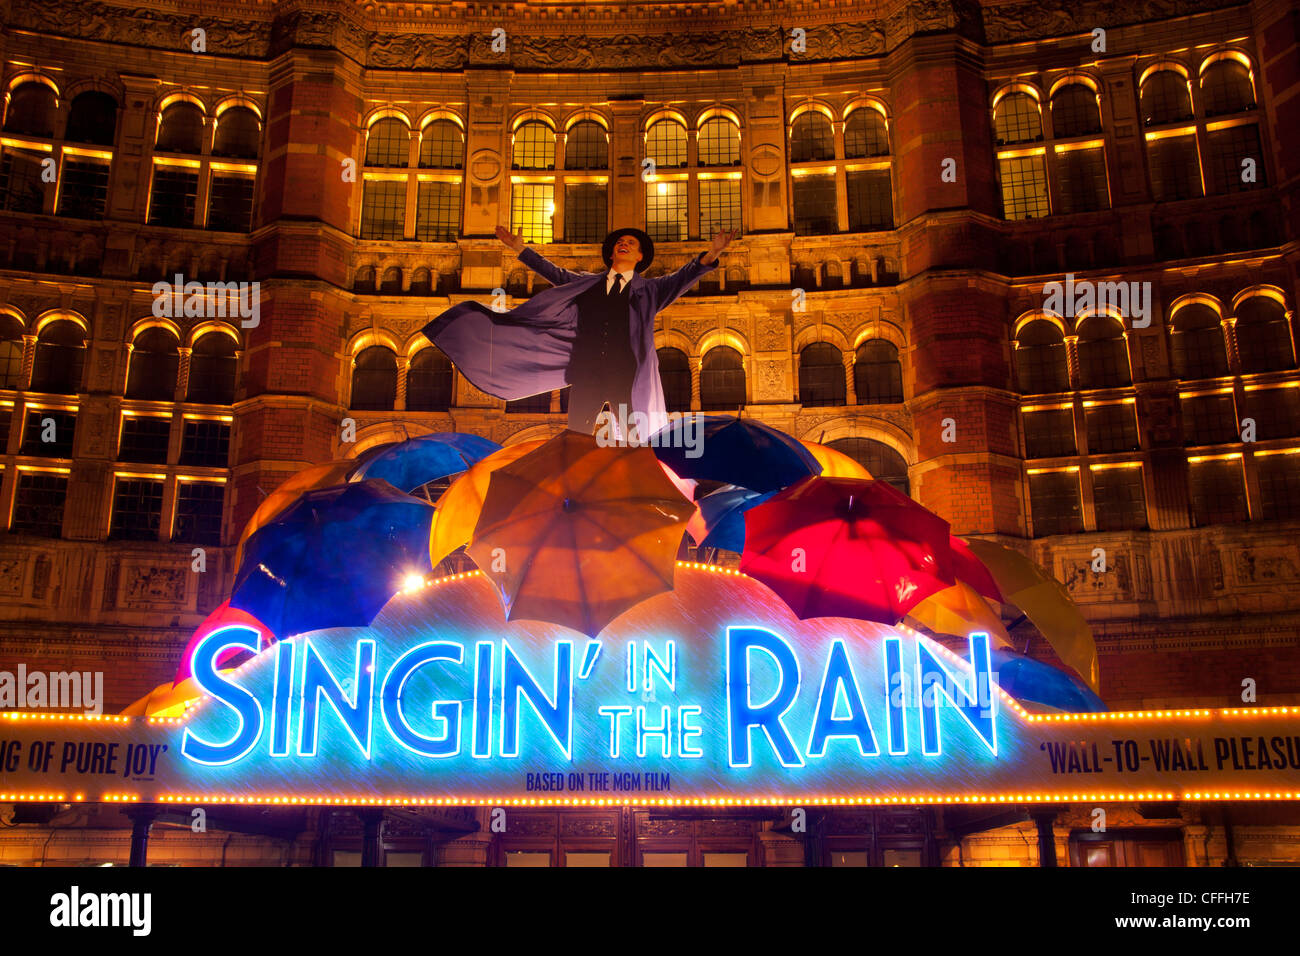 Singin' in the Rain en néon et parapluie display advertising encore de Palace Theatre West End London England UK Banque D'Images